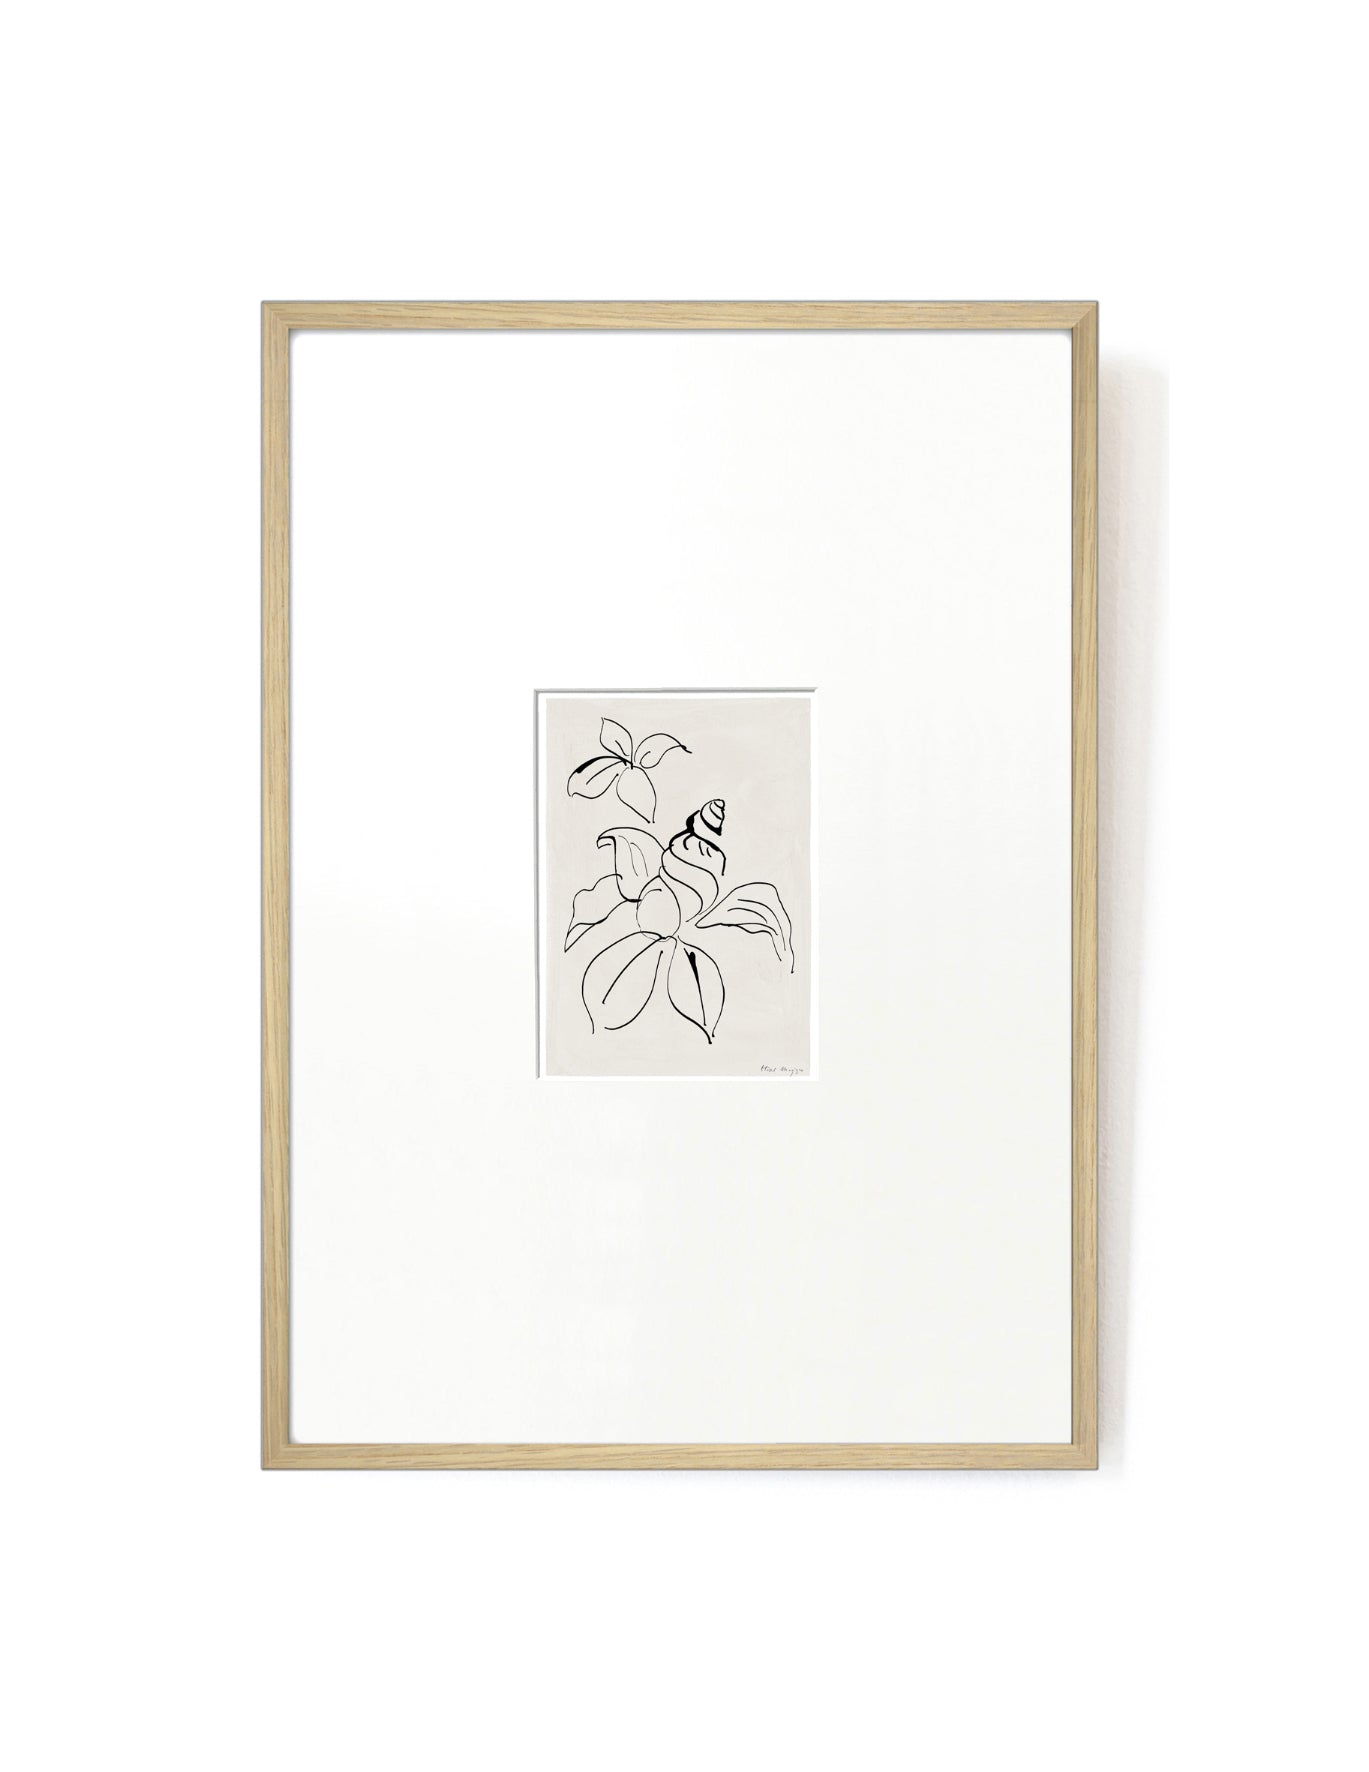 Shell Flower card artwork framed